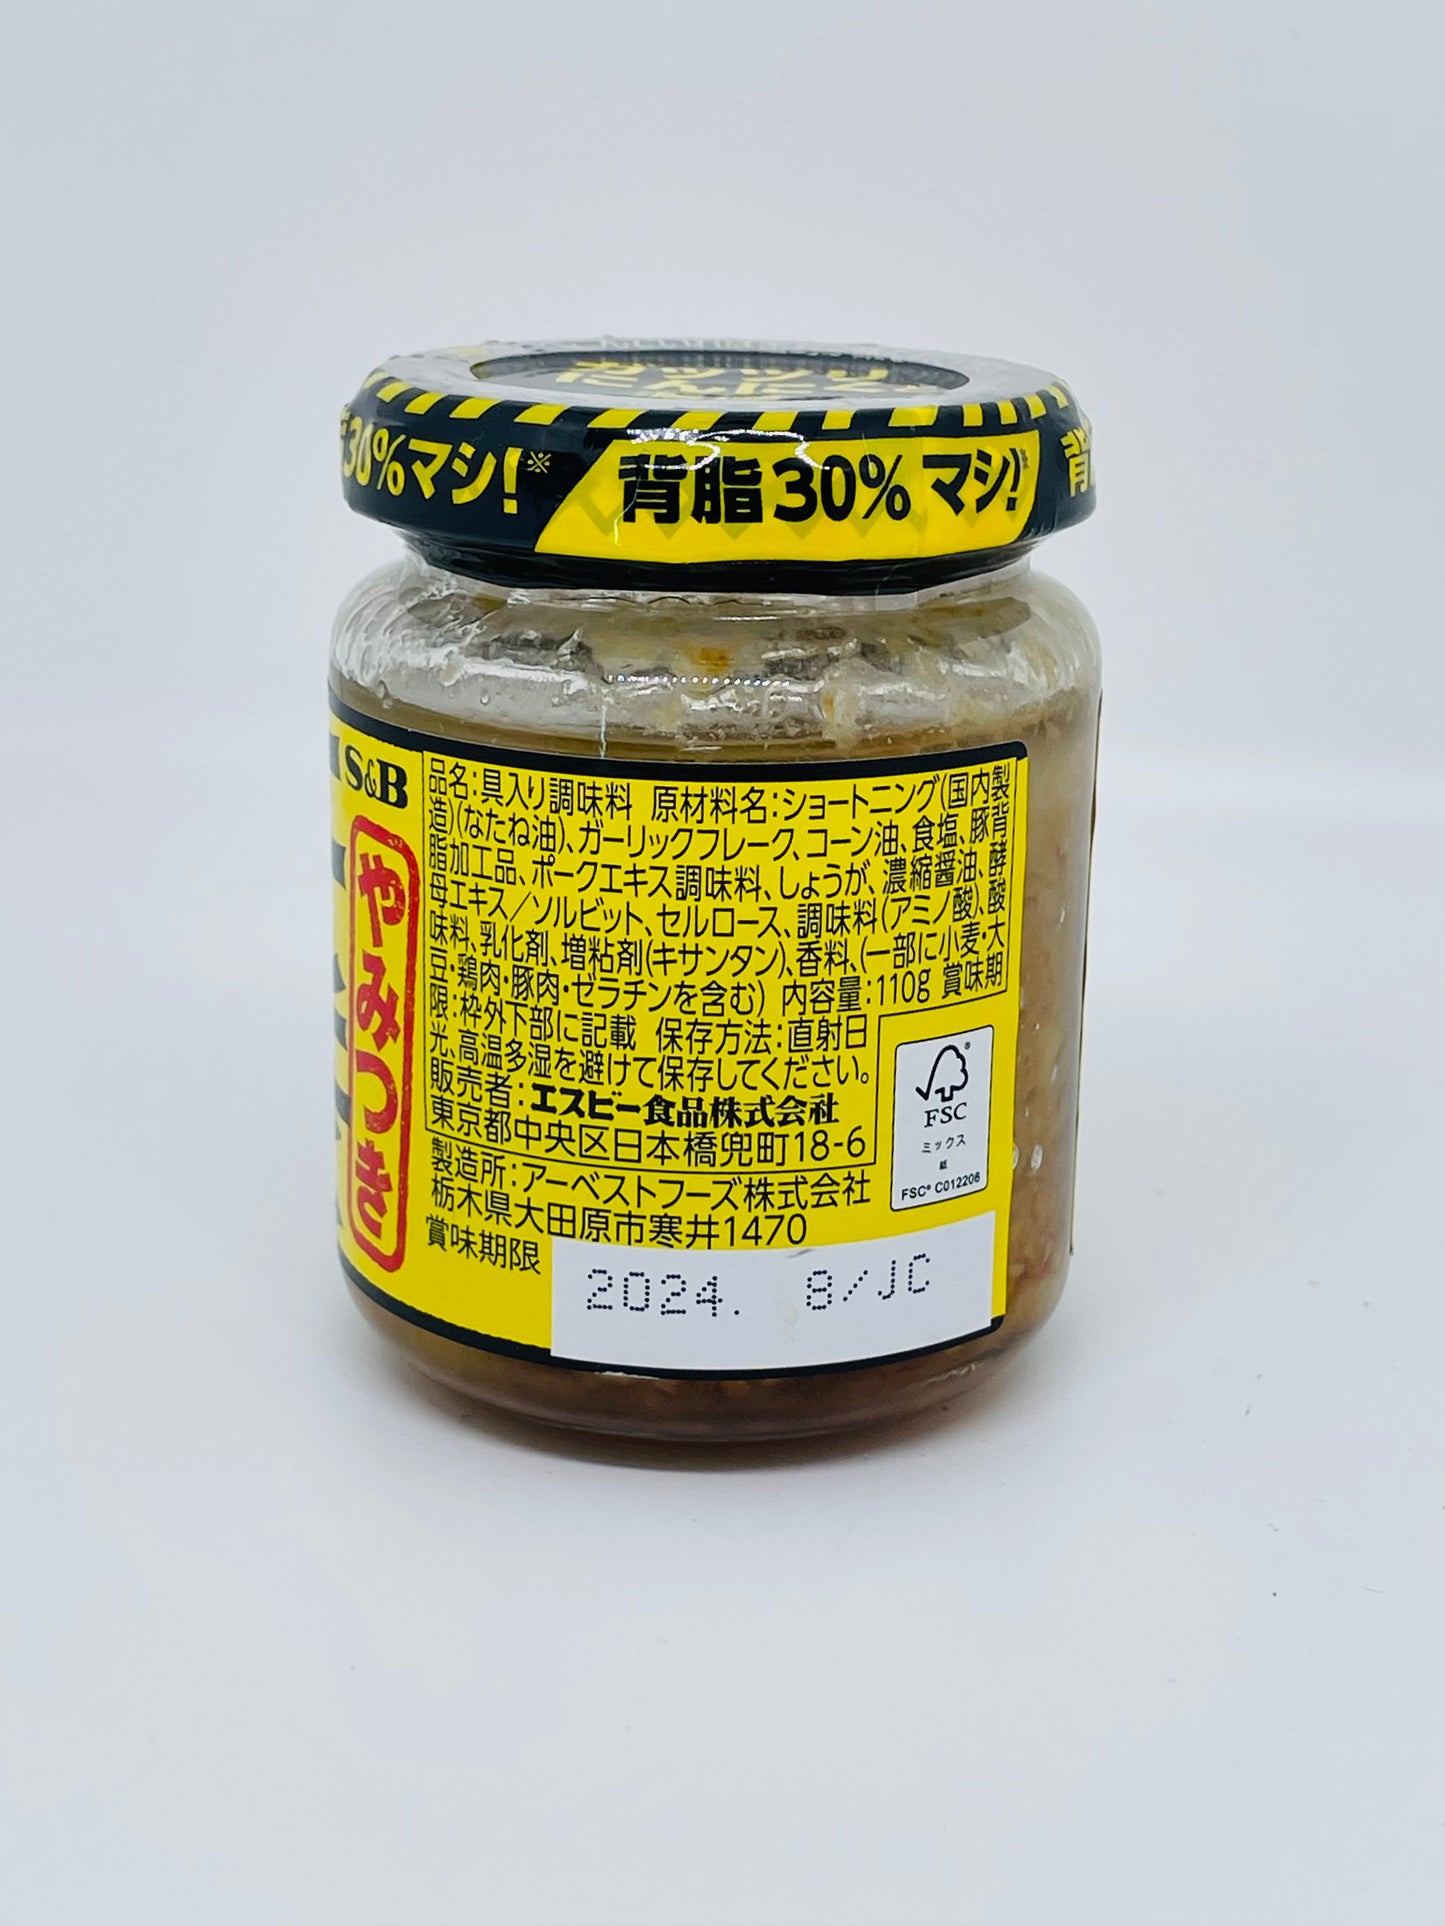 日本S&B大蒜背脂 調味料